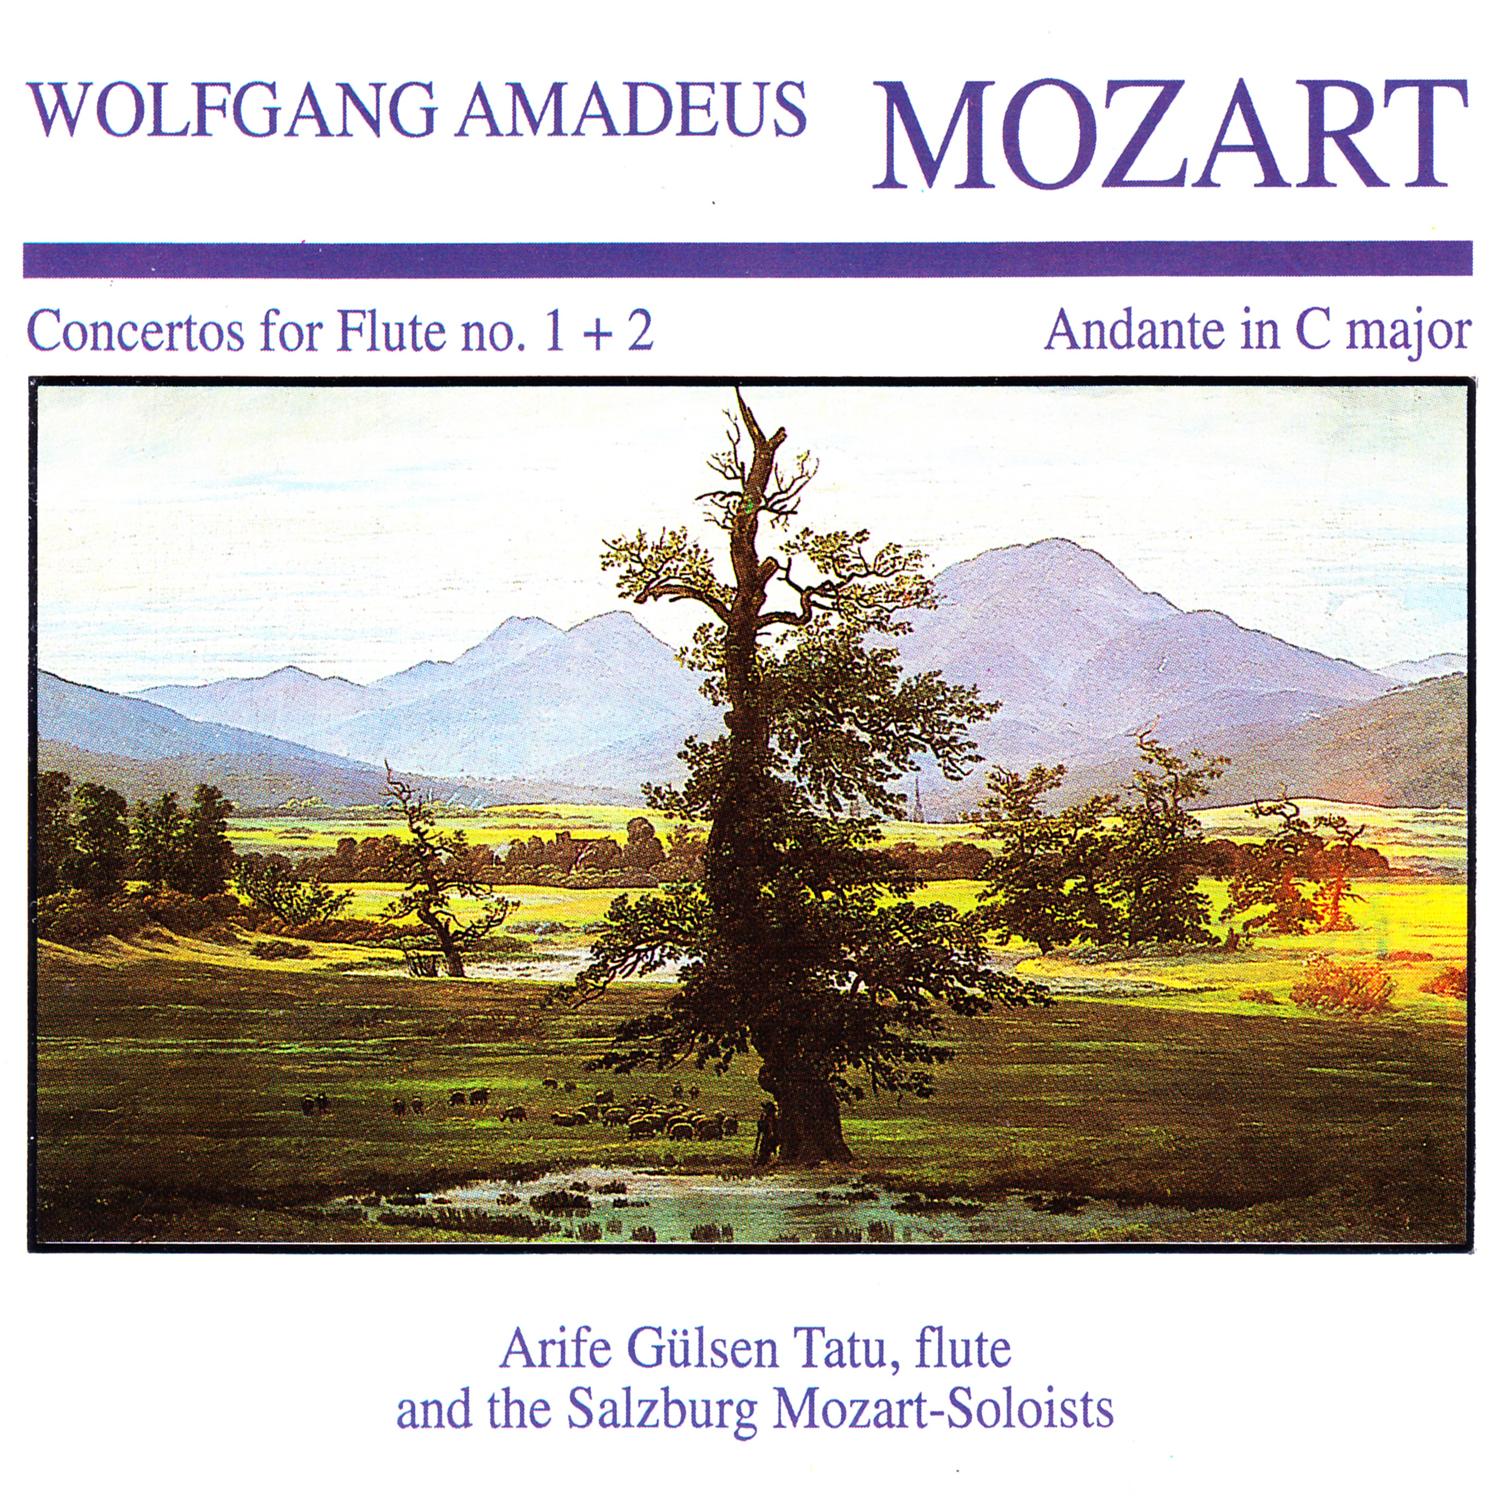 Concerto in G Major for Flute and Orchestra No. 1, K. 313/285c: II. Adagio ma non troppo